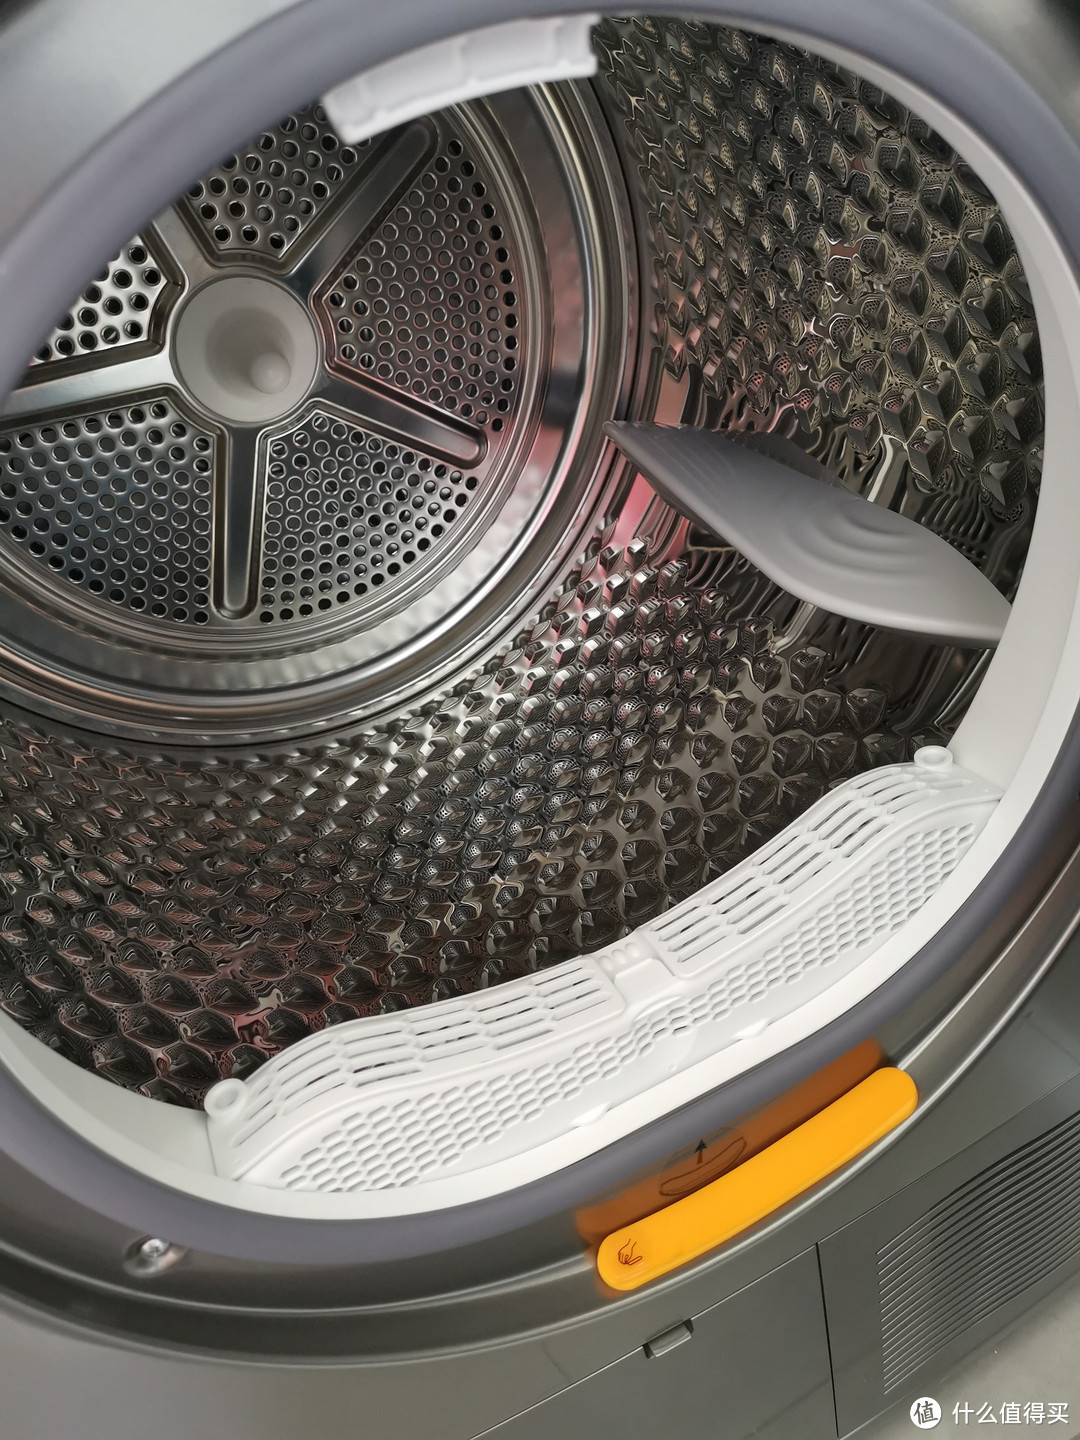 洗衣&干衣机安装全过程记录！